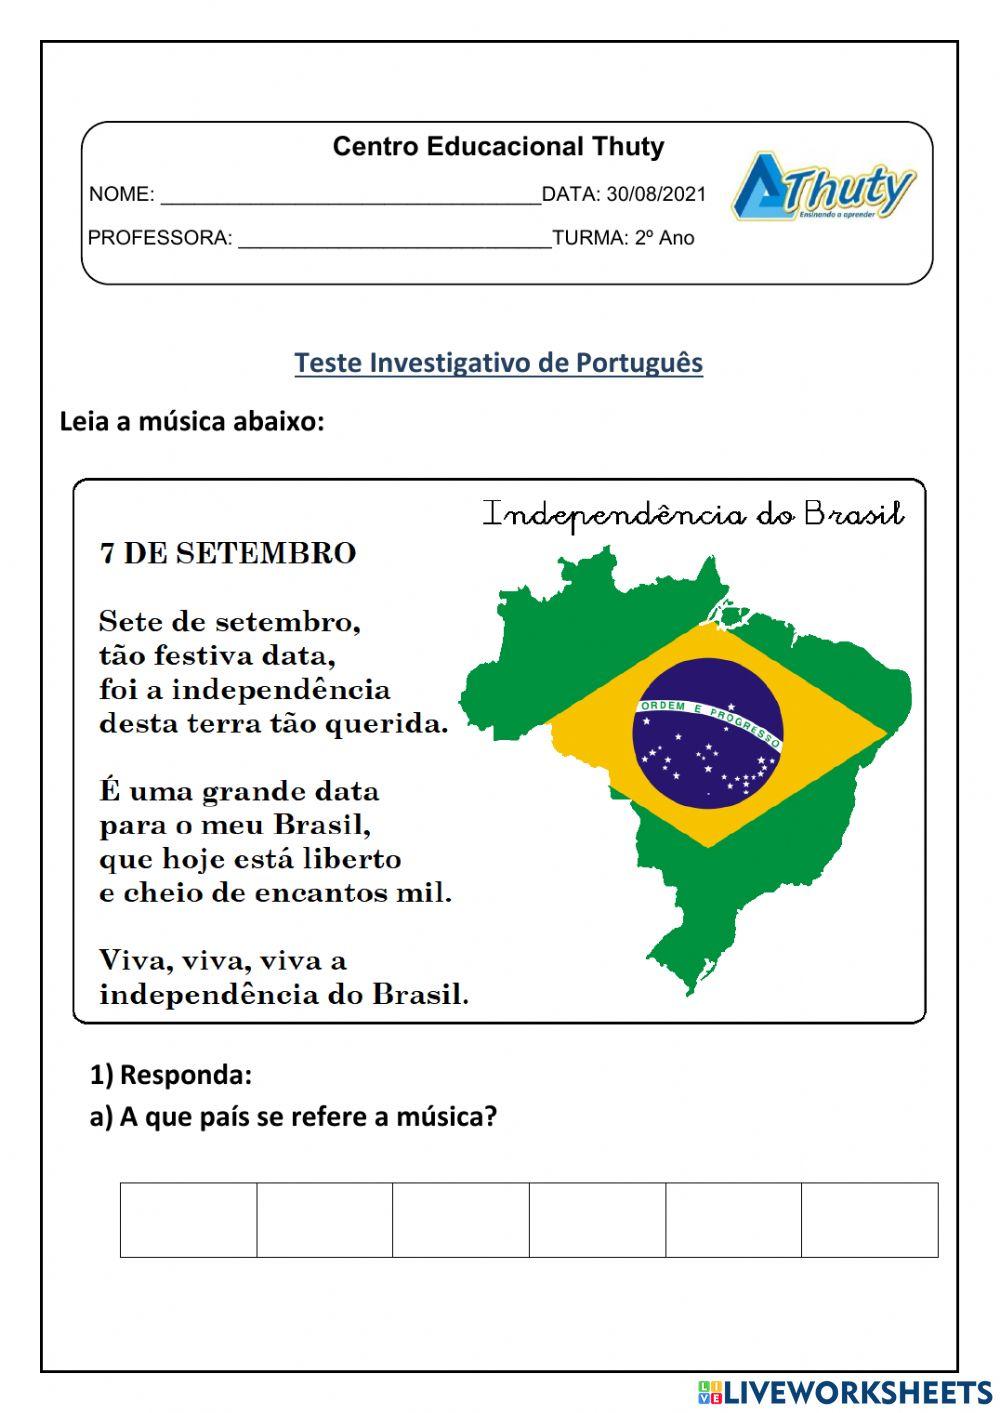 30-08 Teste Investigativo de Português